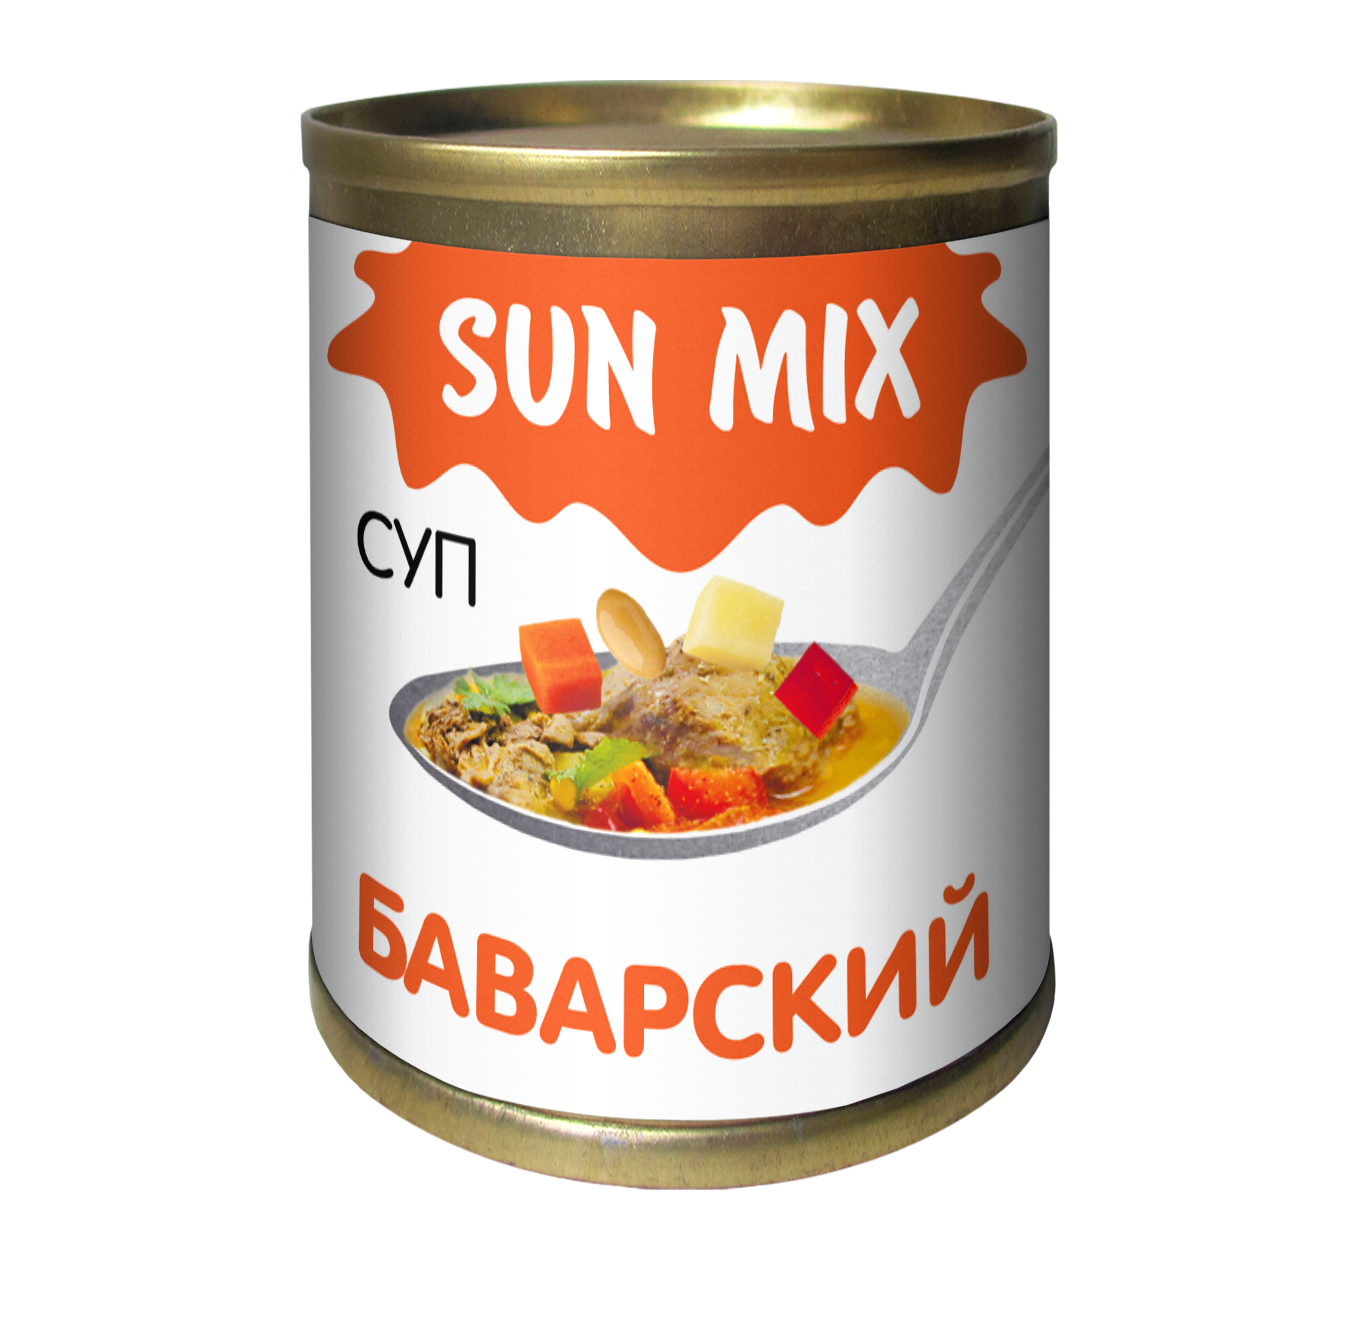 Лучшие консервы для супа. Куриный суп в консервах. Консервы суп Семилукские. Солнце консервированное. Консервированные супы Сан микс.